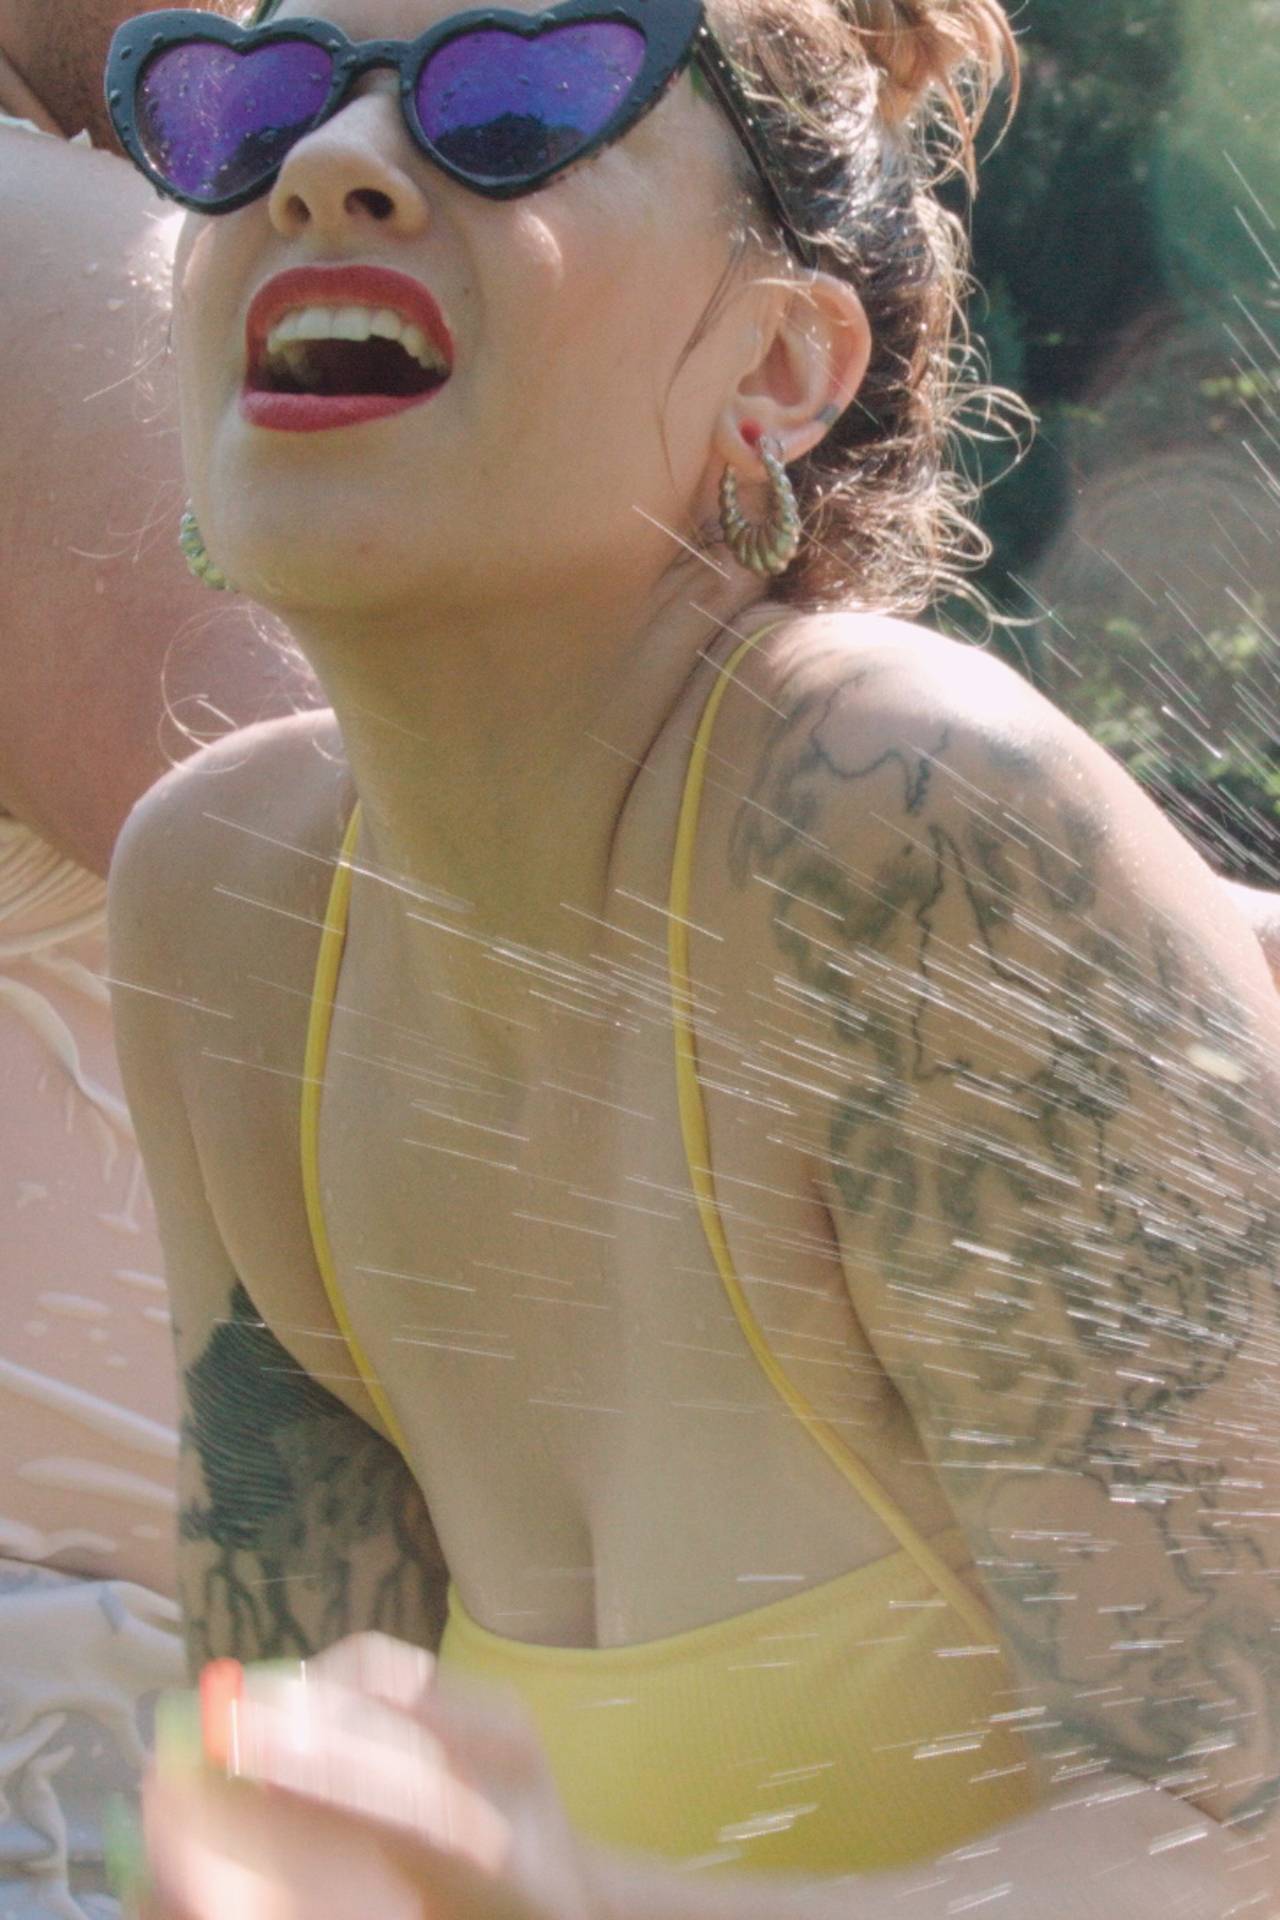 Tattooed porn performer in yellow bikini getting wet in the pool